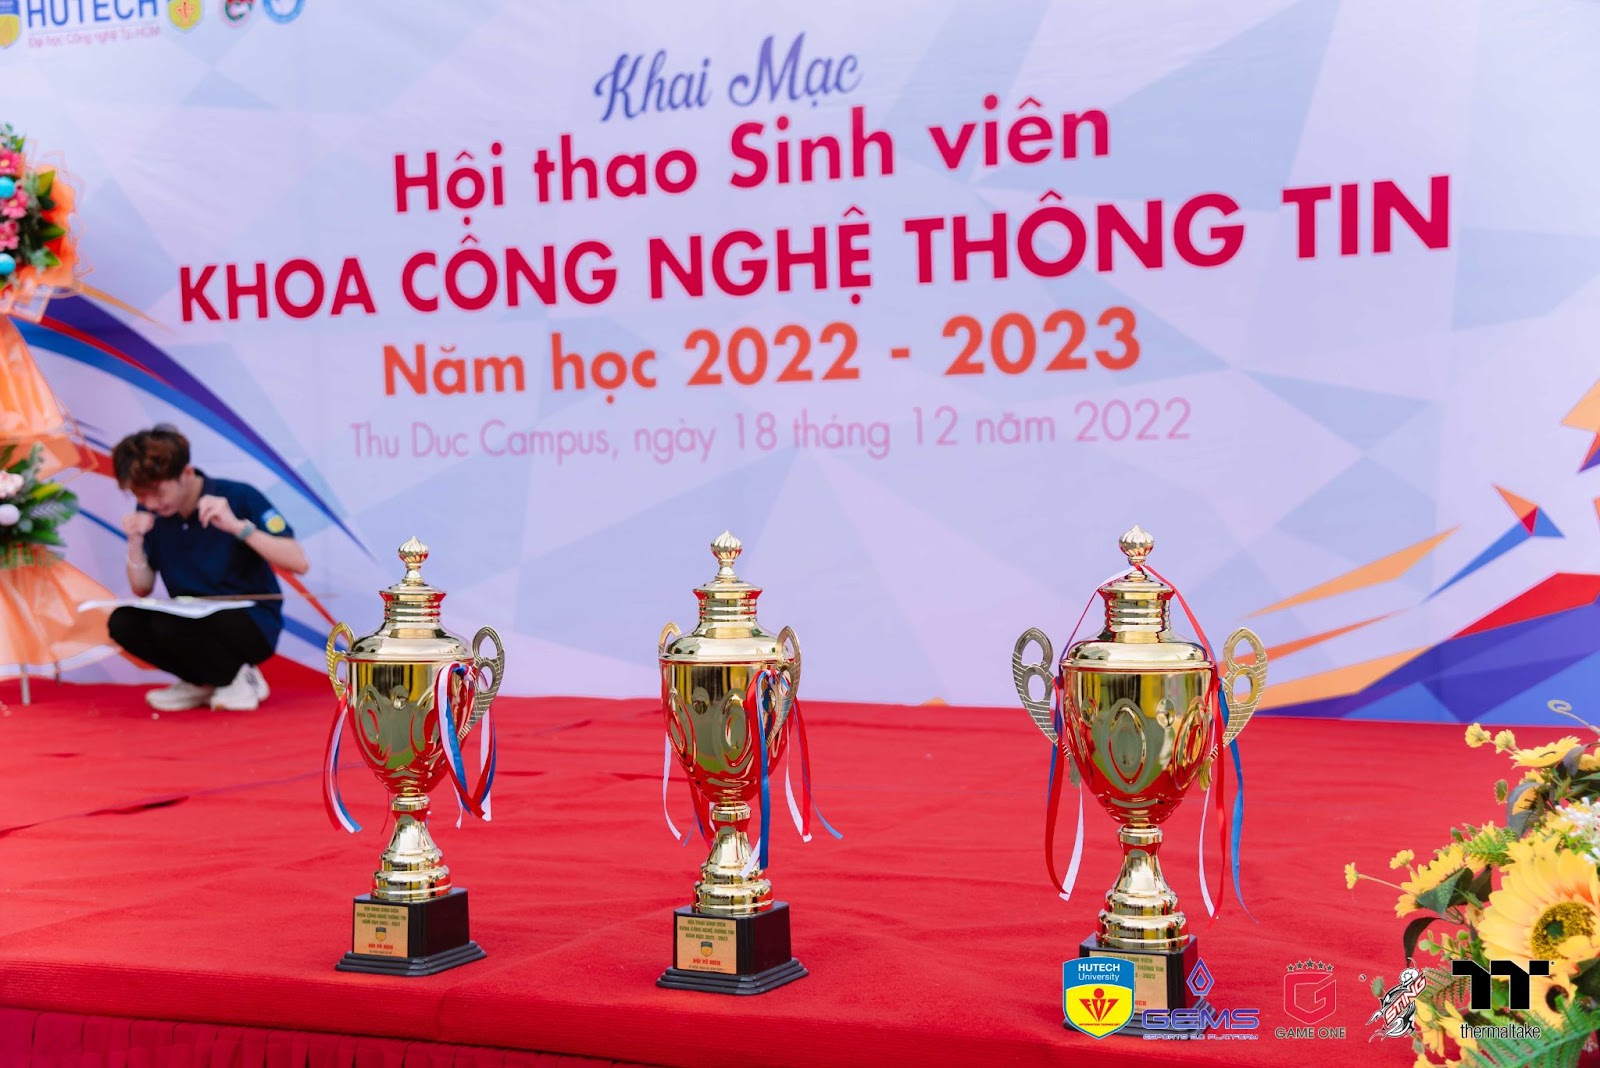 LỄ KHAI MẠC HỘI THAO KHOA CÔNG NGHỆ THÔNG TIN - IT HUTECH CHAMPIONSHIP 2022 283